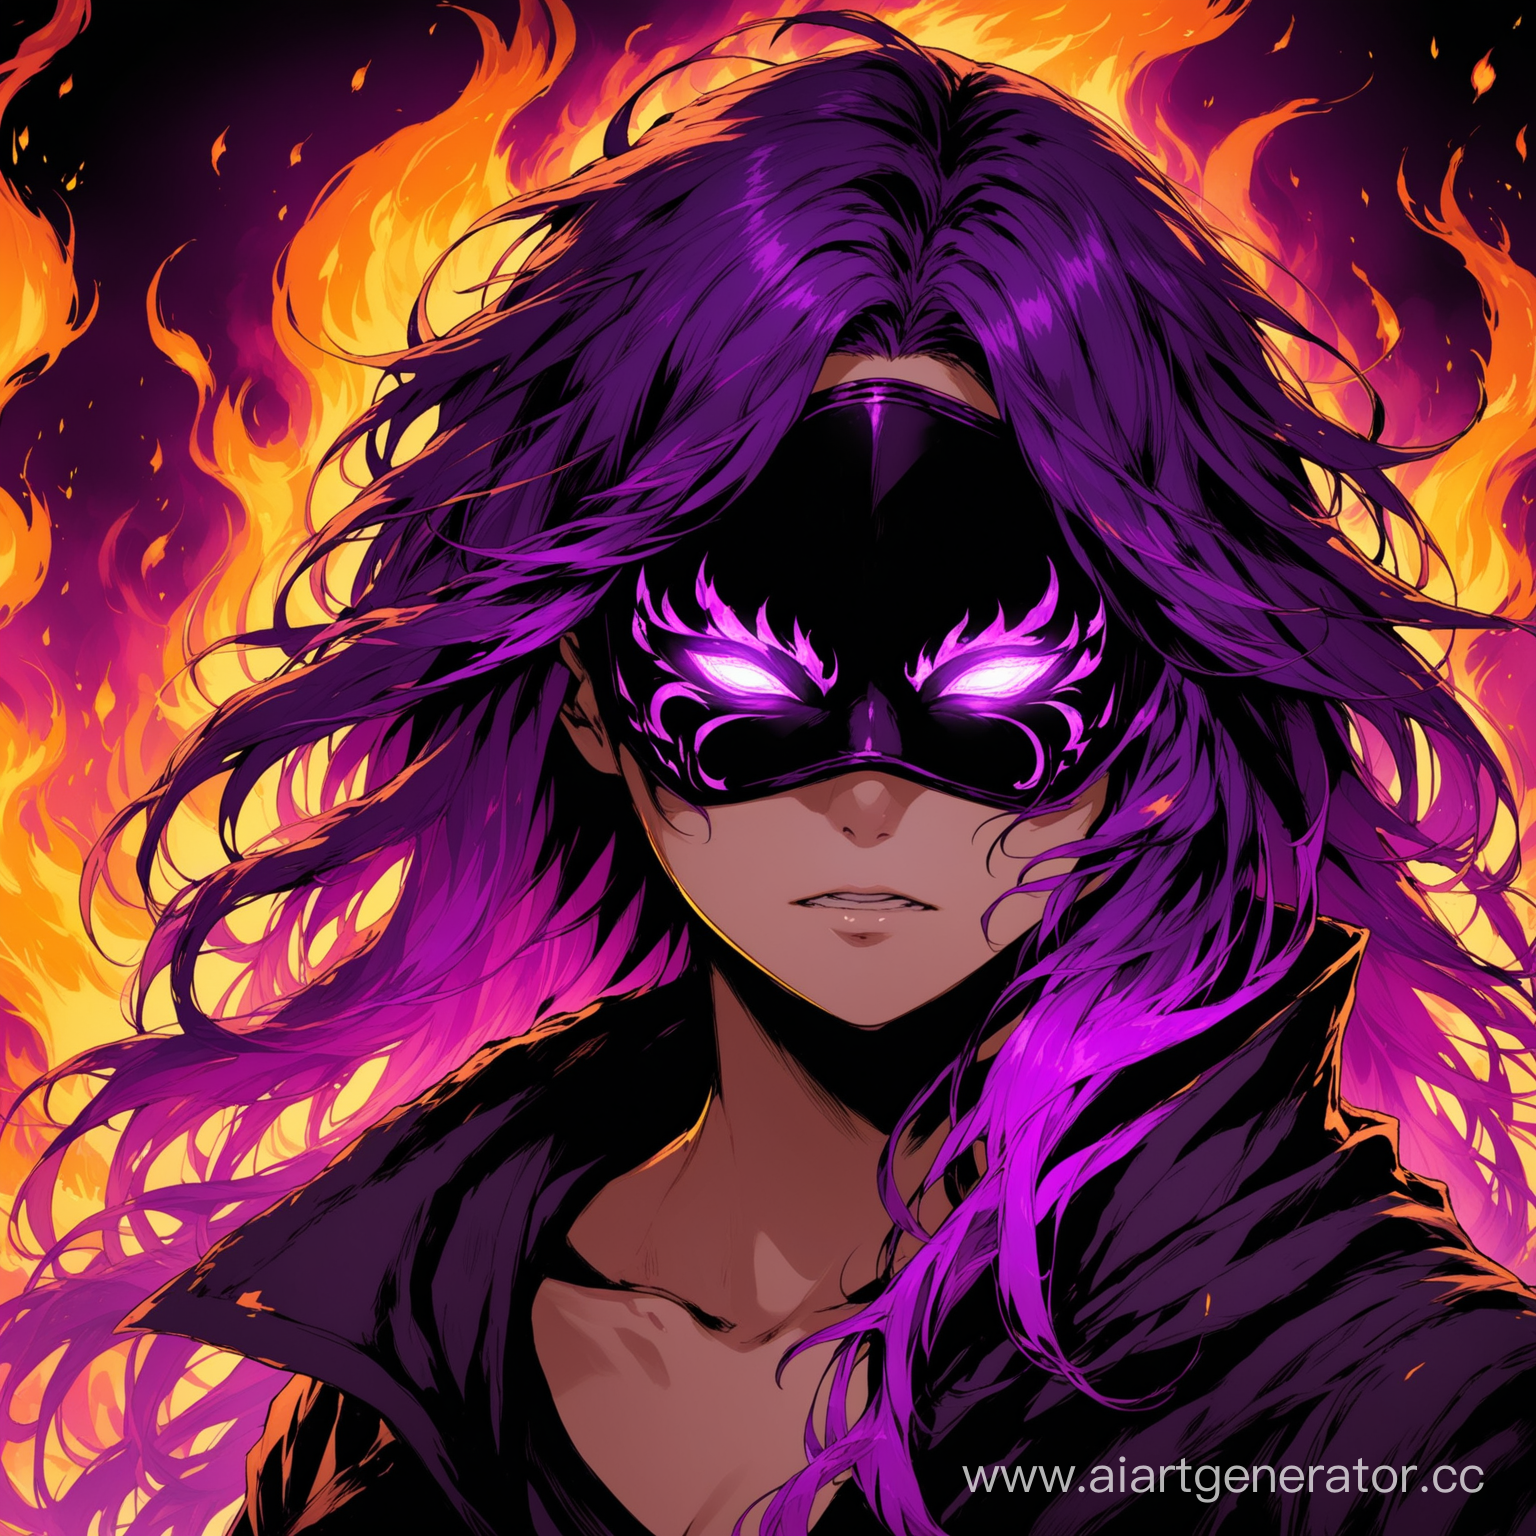 человек в маске с глазами горящими фиолетовым огнем и растрепанными волосами